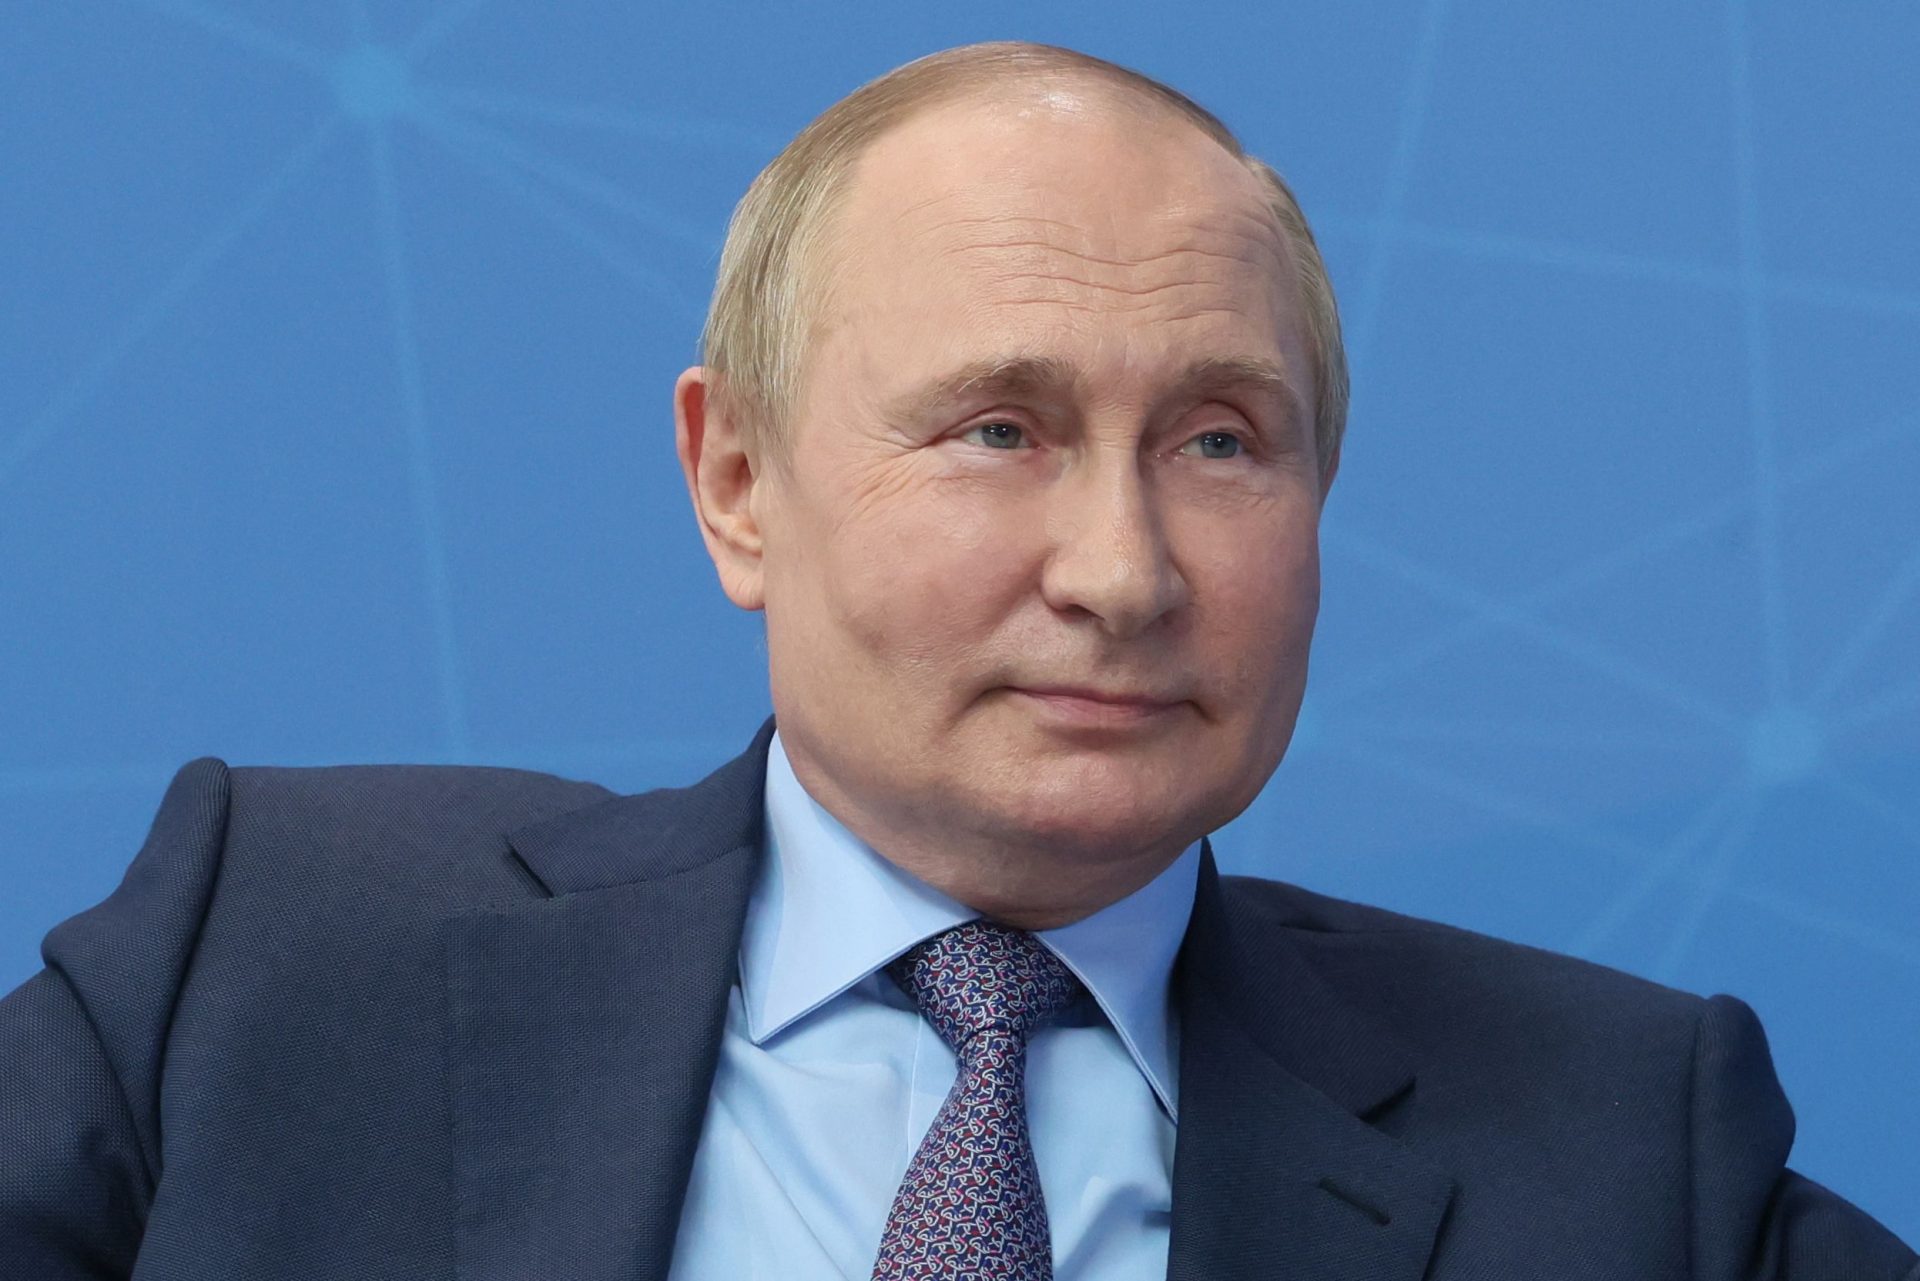 Seguranças de Putin guardam as fezes do Presidente russo em viagens e levam-nas de volta para a Rússia